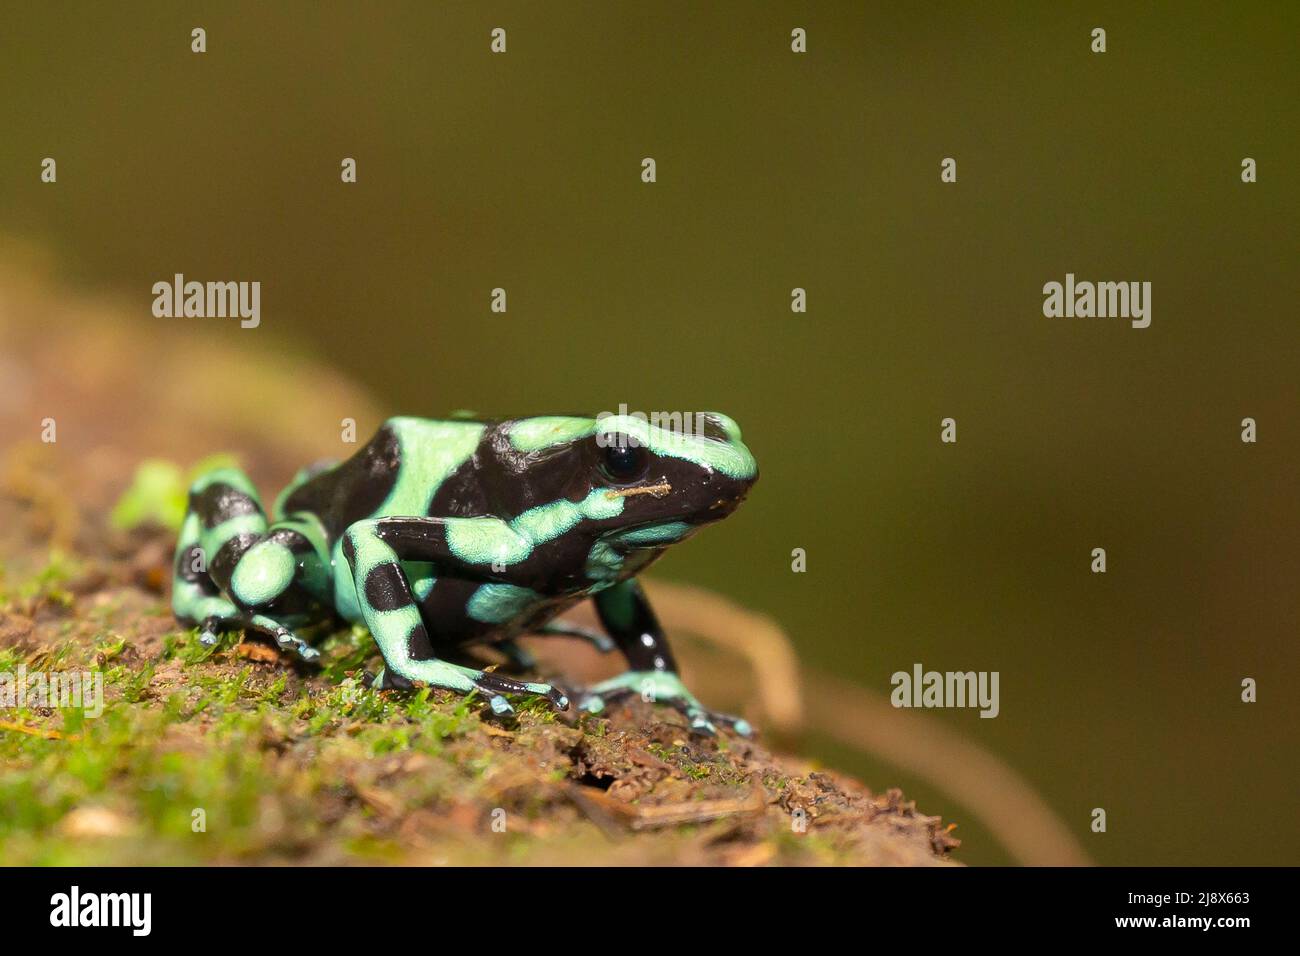 Grenouille de poison verte et noire (Dendrobates auratus) ou grenouille flèche verte et noire Banque D'Images